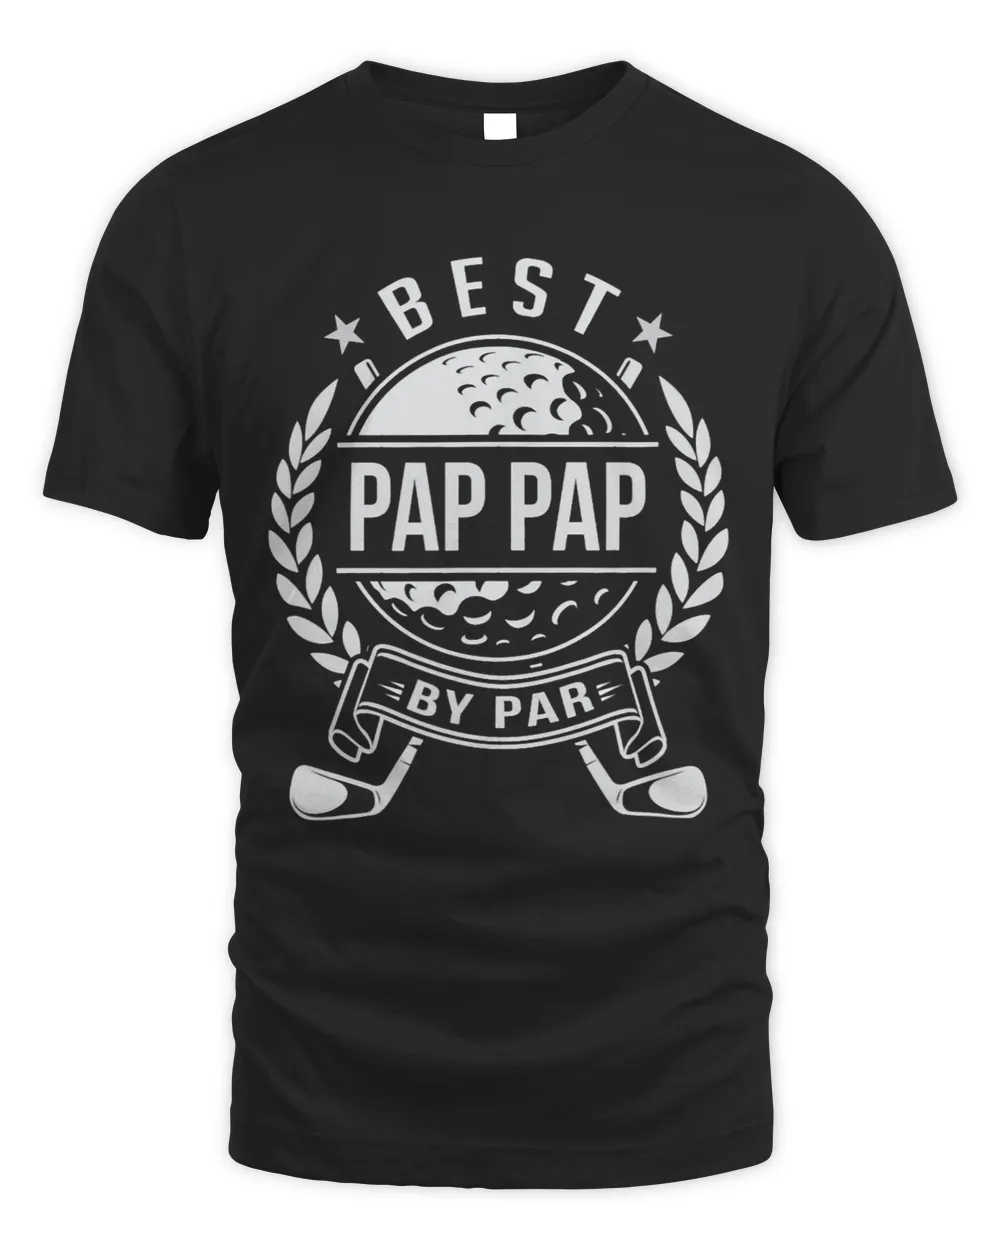 pap pap the best by par golfing